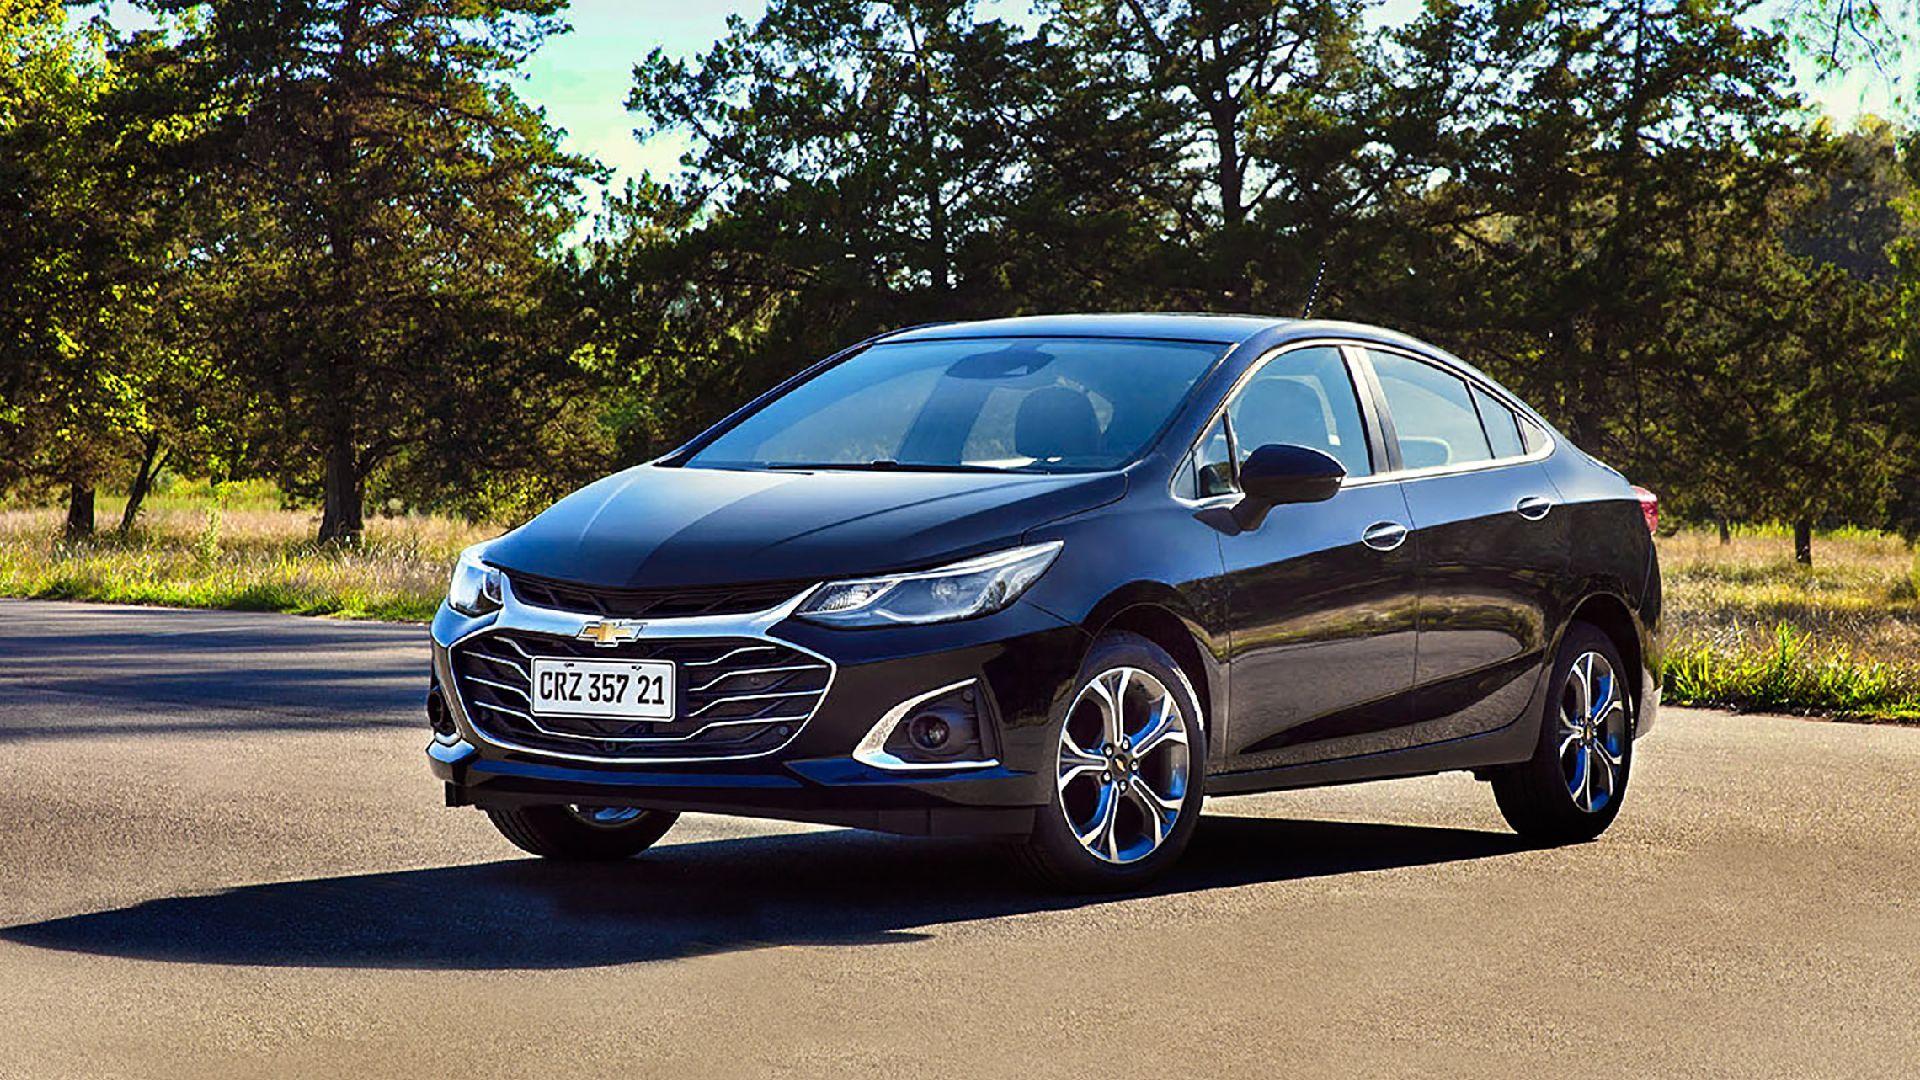 Chevrolet presentó el nuevo Cruze precios y ficha técnica GarantíaPlus